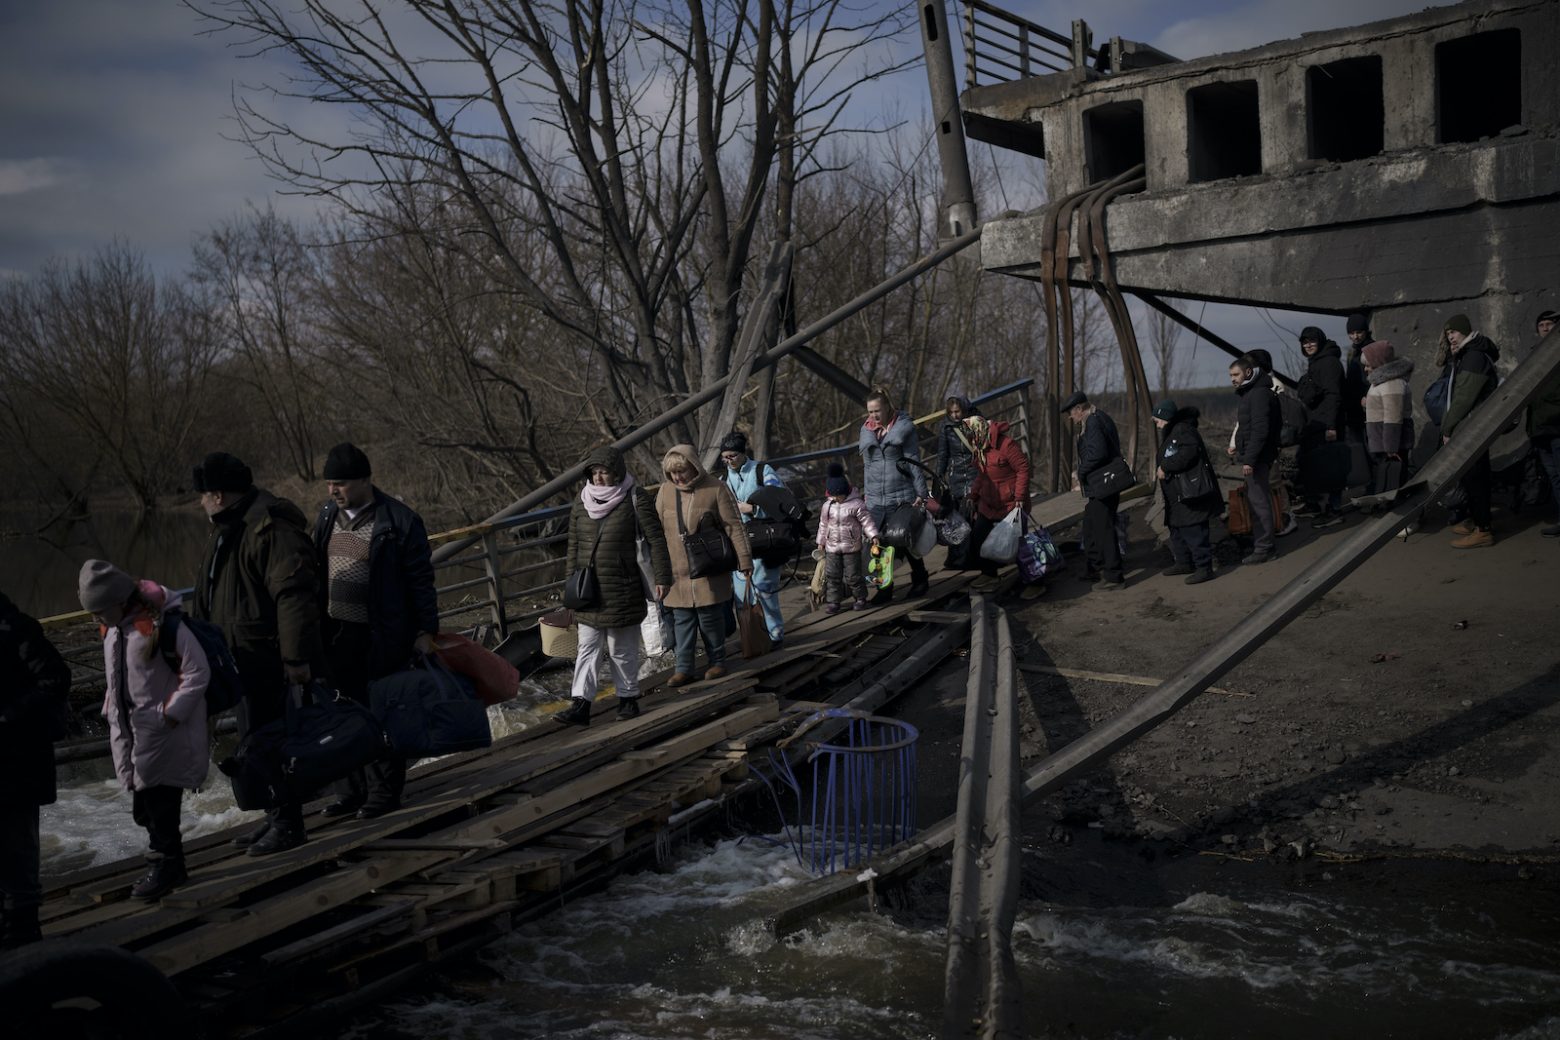 ΗΠΑ: 1,6 εκατομμύρια Ουκρανοί έχουν μεταφερθεί παρά τη θέλησή τους στη Ρωσία - Τι απαντά η Μόσχα